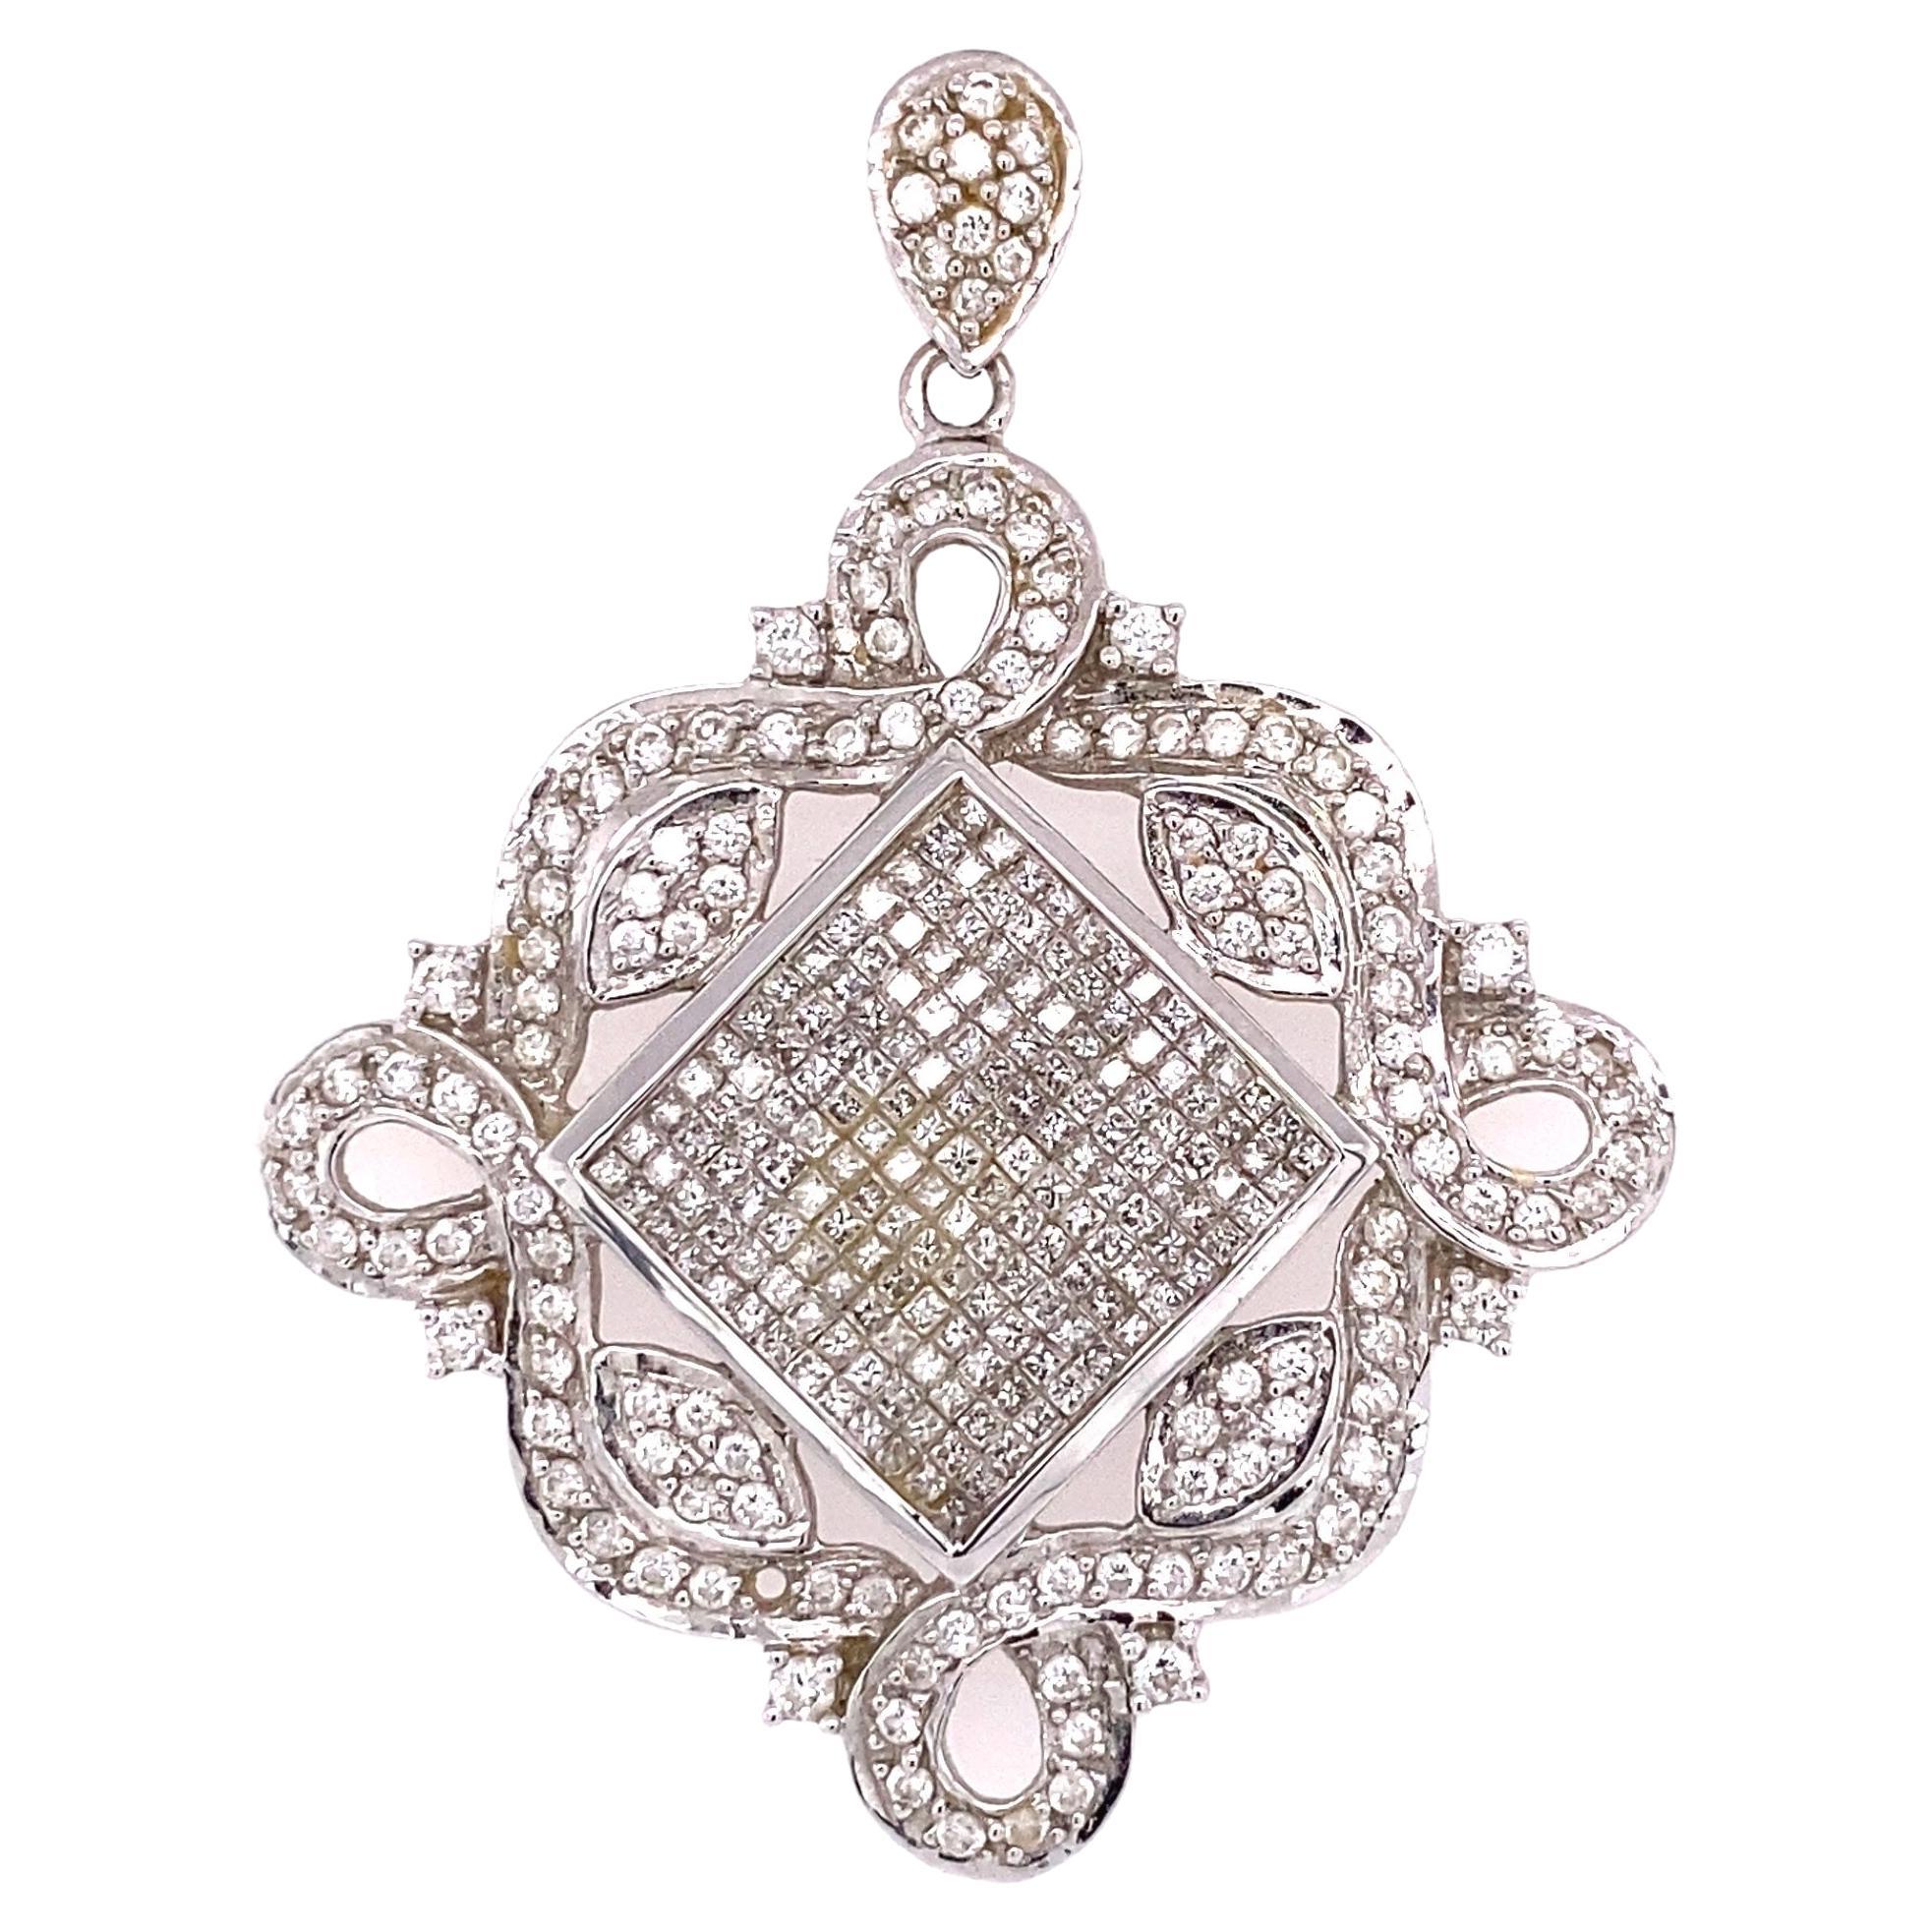 Art Deco Revival Diamond Gold Pendant Necklace For Sale